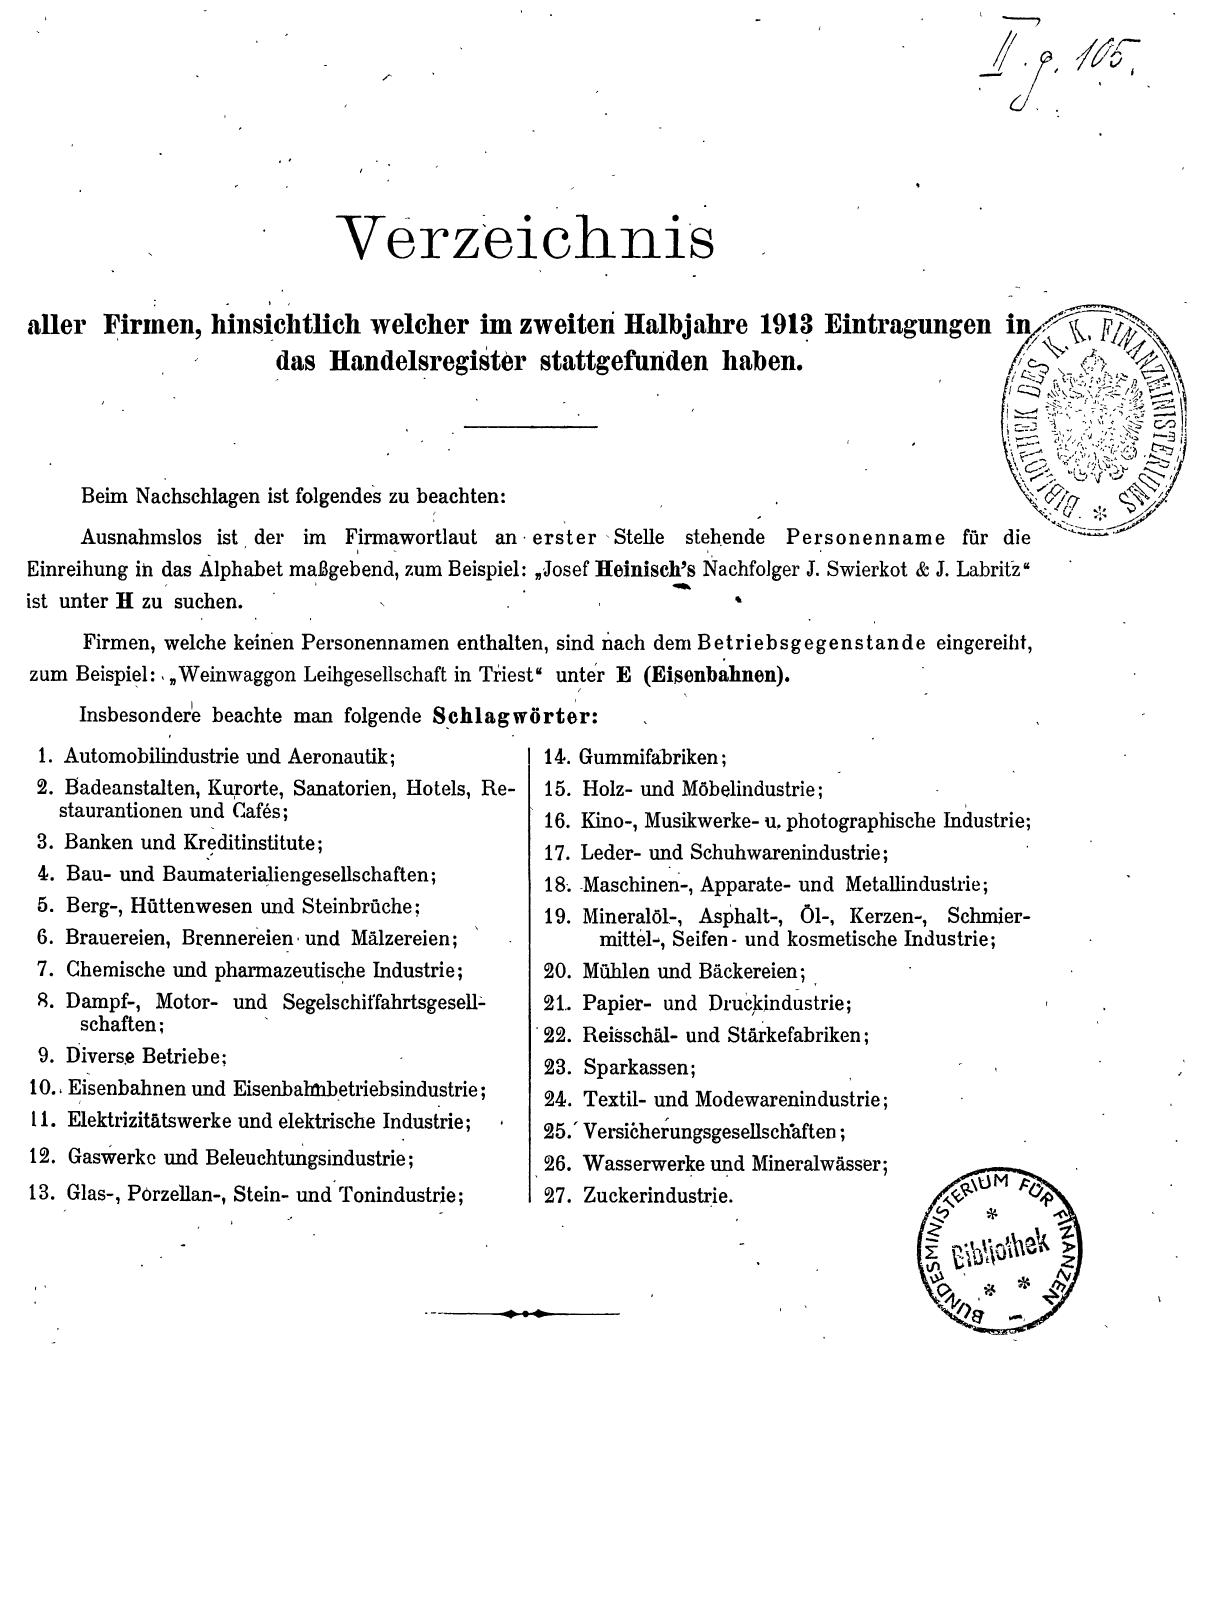 Zentralblatt für die Eintragungen in das Handelsregister 1913, Teil 2 - Seite 5